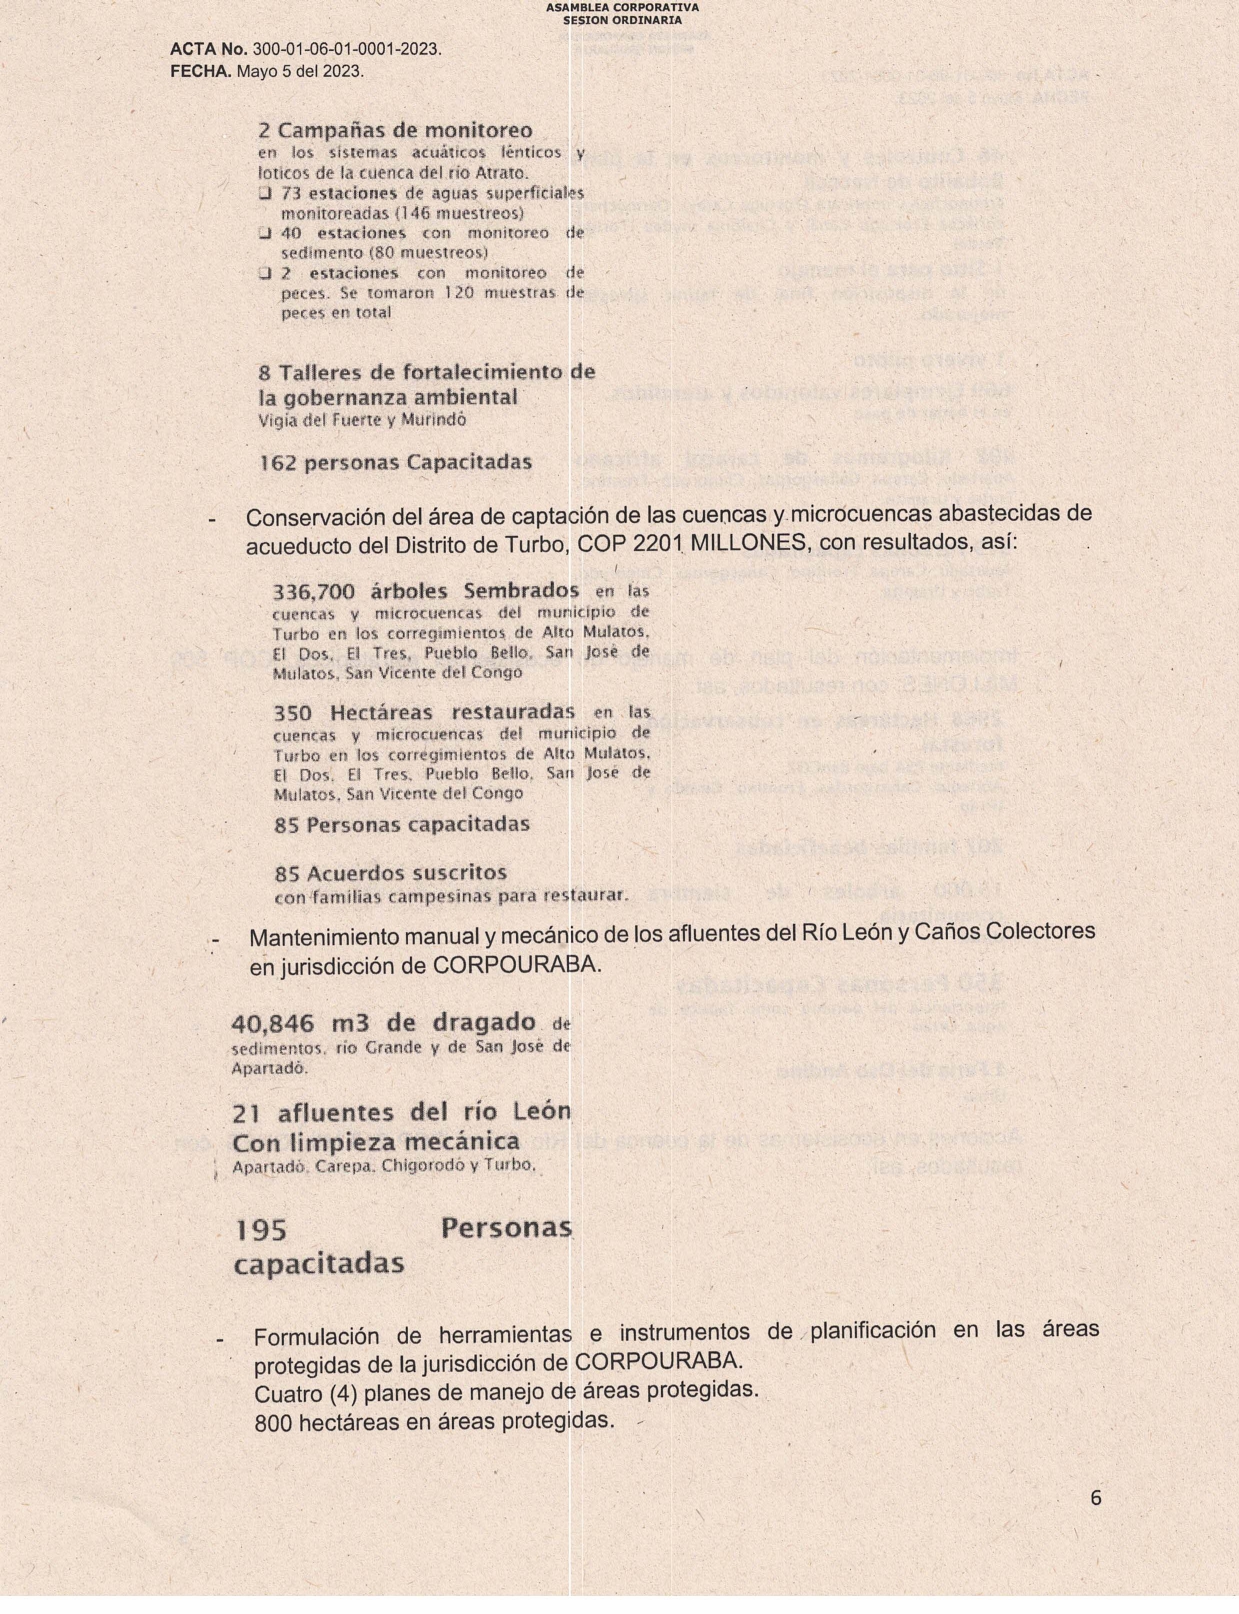 ACTA-0001-RENDICION-CUENTAS-2022_page-0006